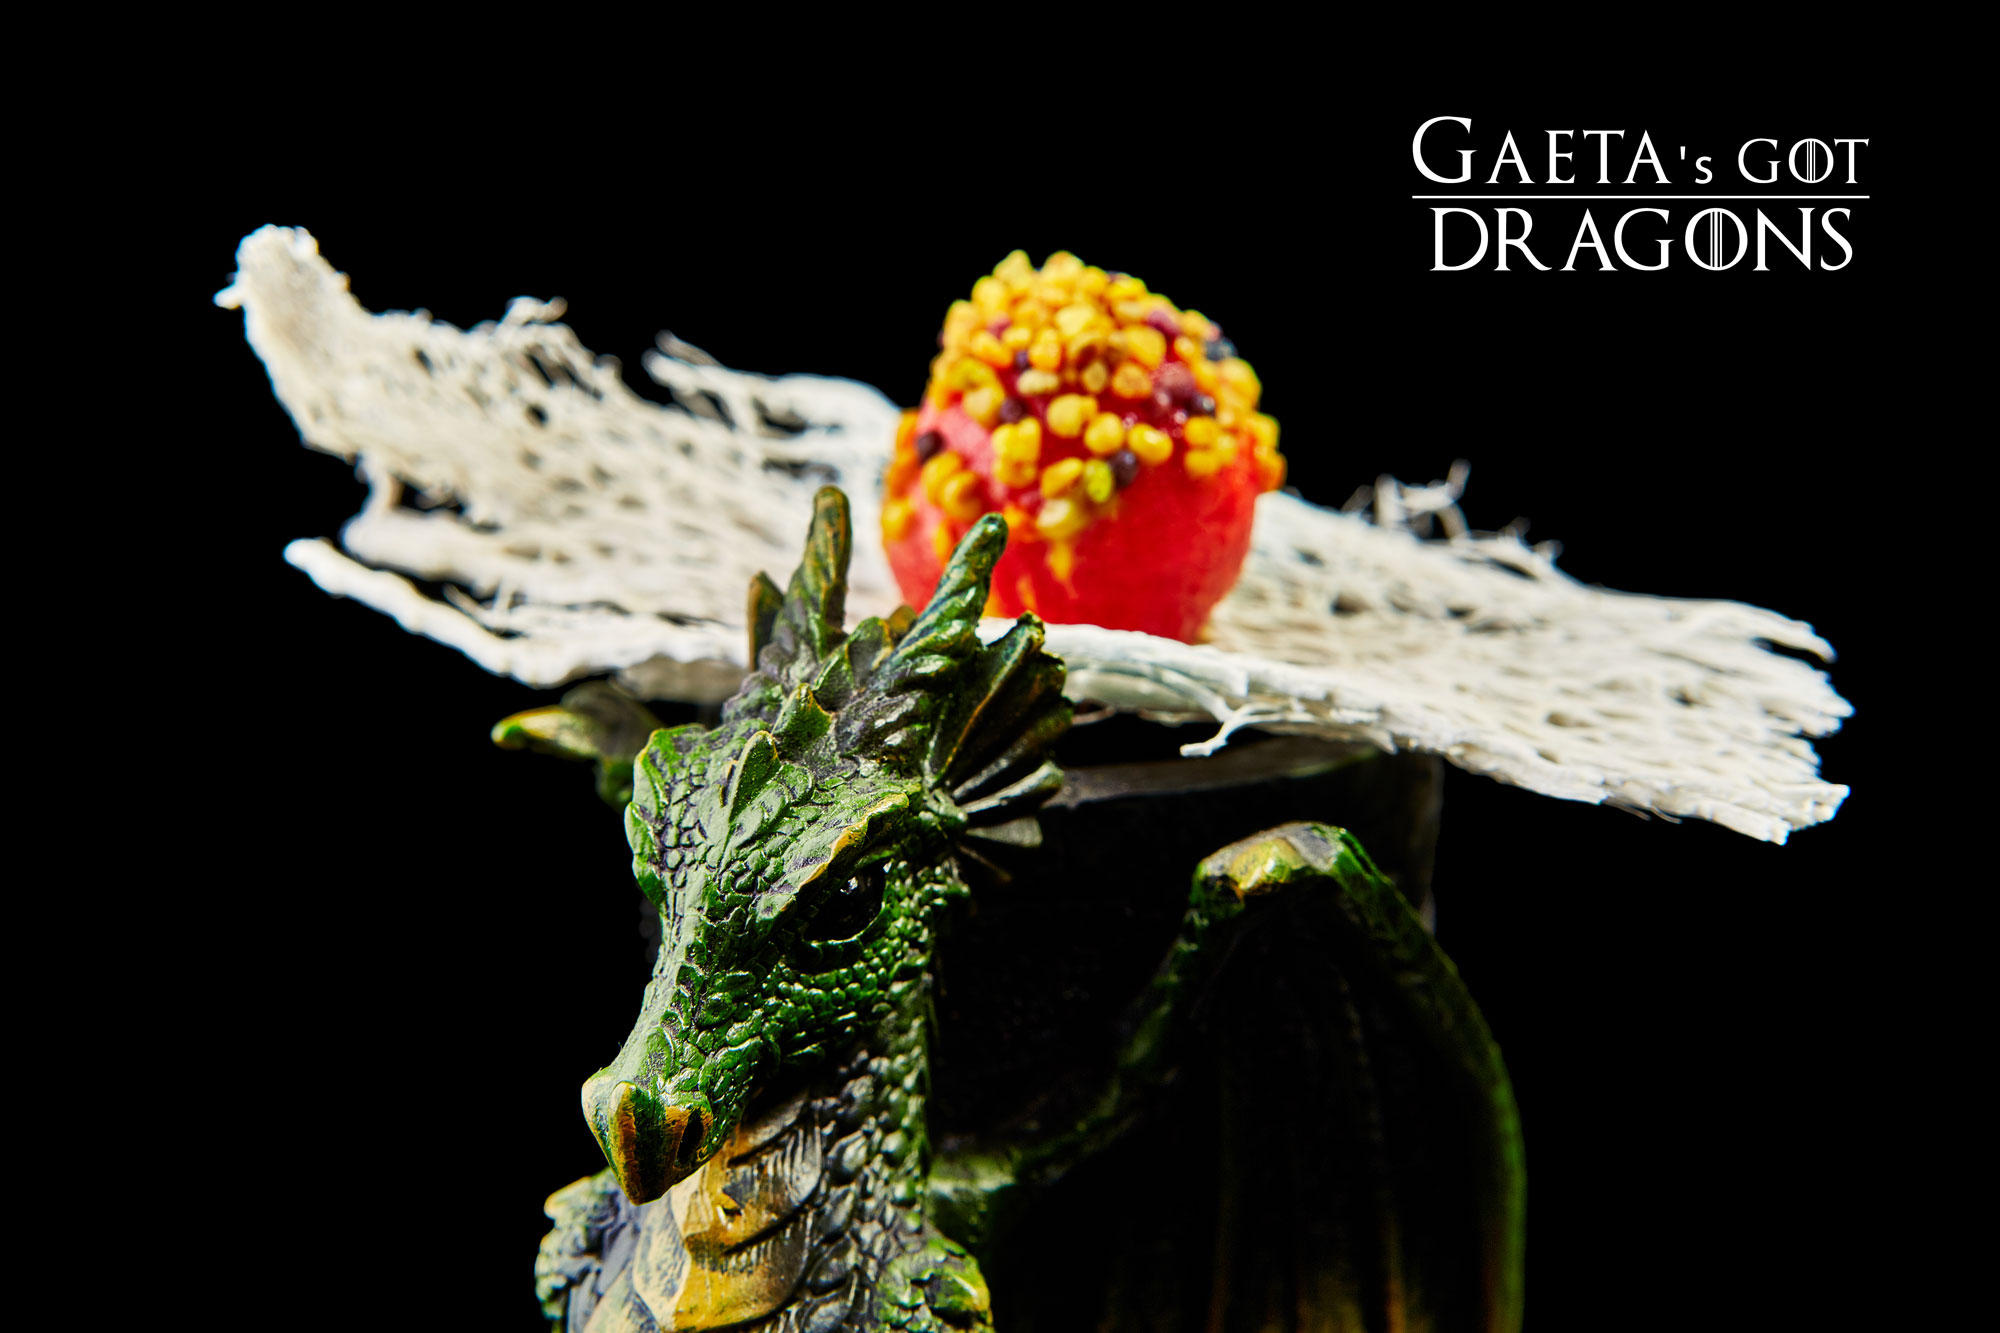 Gaeta's_Got_Dragons_Cocktail_fabio_camboni (2)